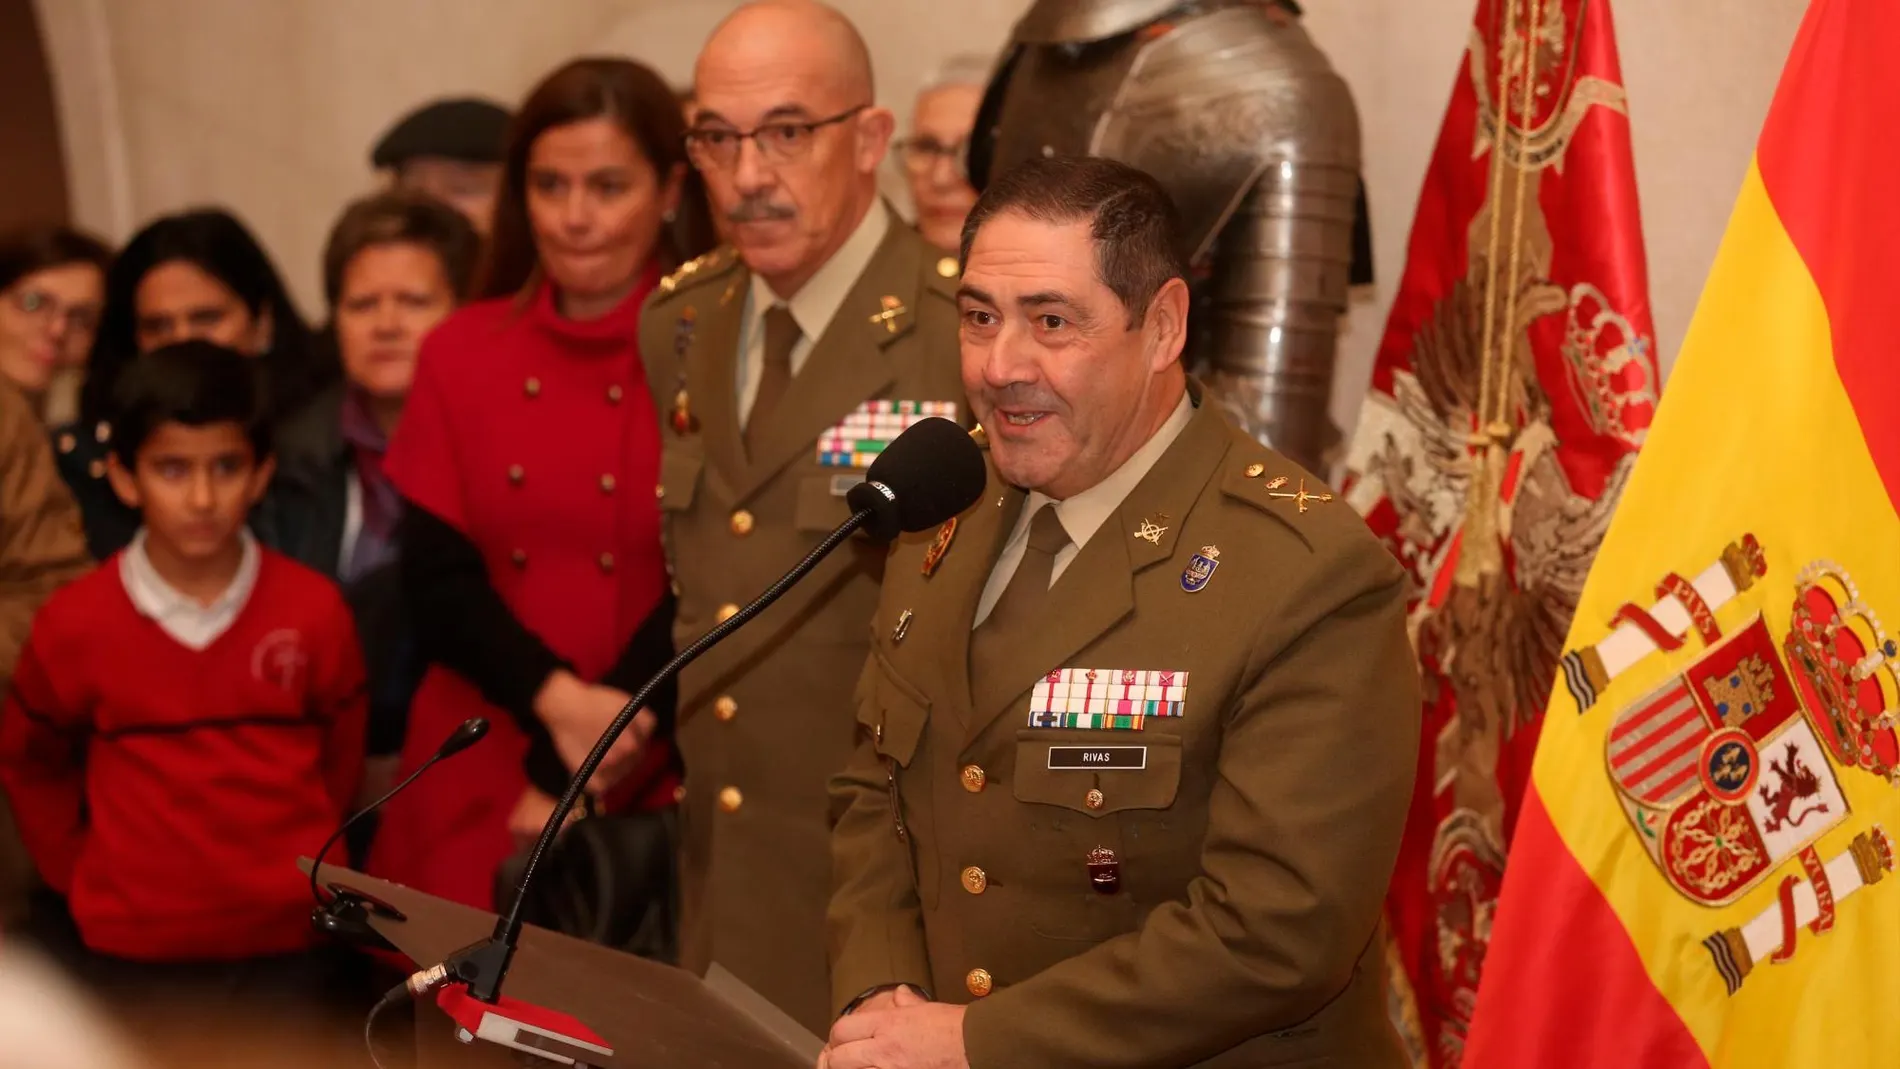 El comandante militar de Valladolid y Palencia, general José Rivas, jefe de la IV Subinspección del Ejército, inaugura la exposición sobre la bandera que puede verse en el Palacio Real. Junto a él, el jefe del Estado Mayor de la Defensa, Alejandro Martínez